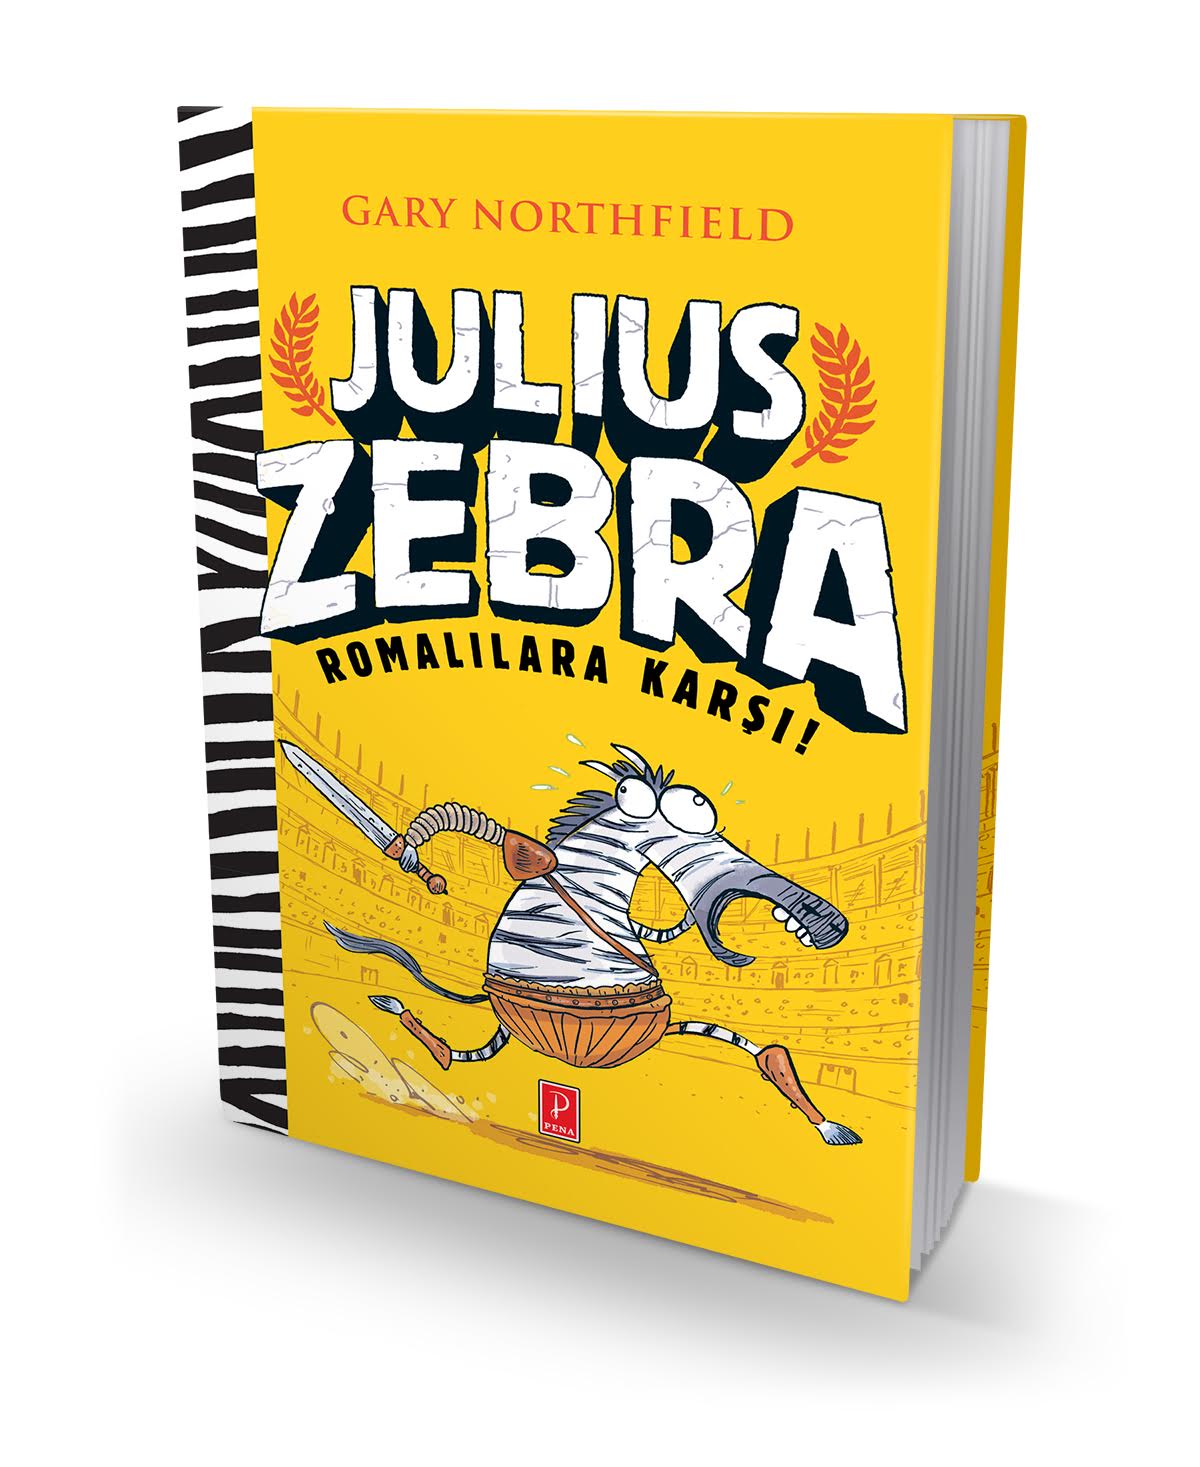 Bütün Romalılara kafayı yedirten hayvan: Julius Zebra